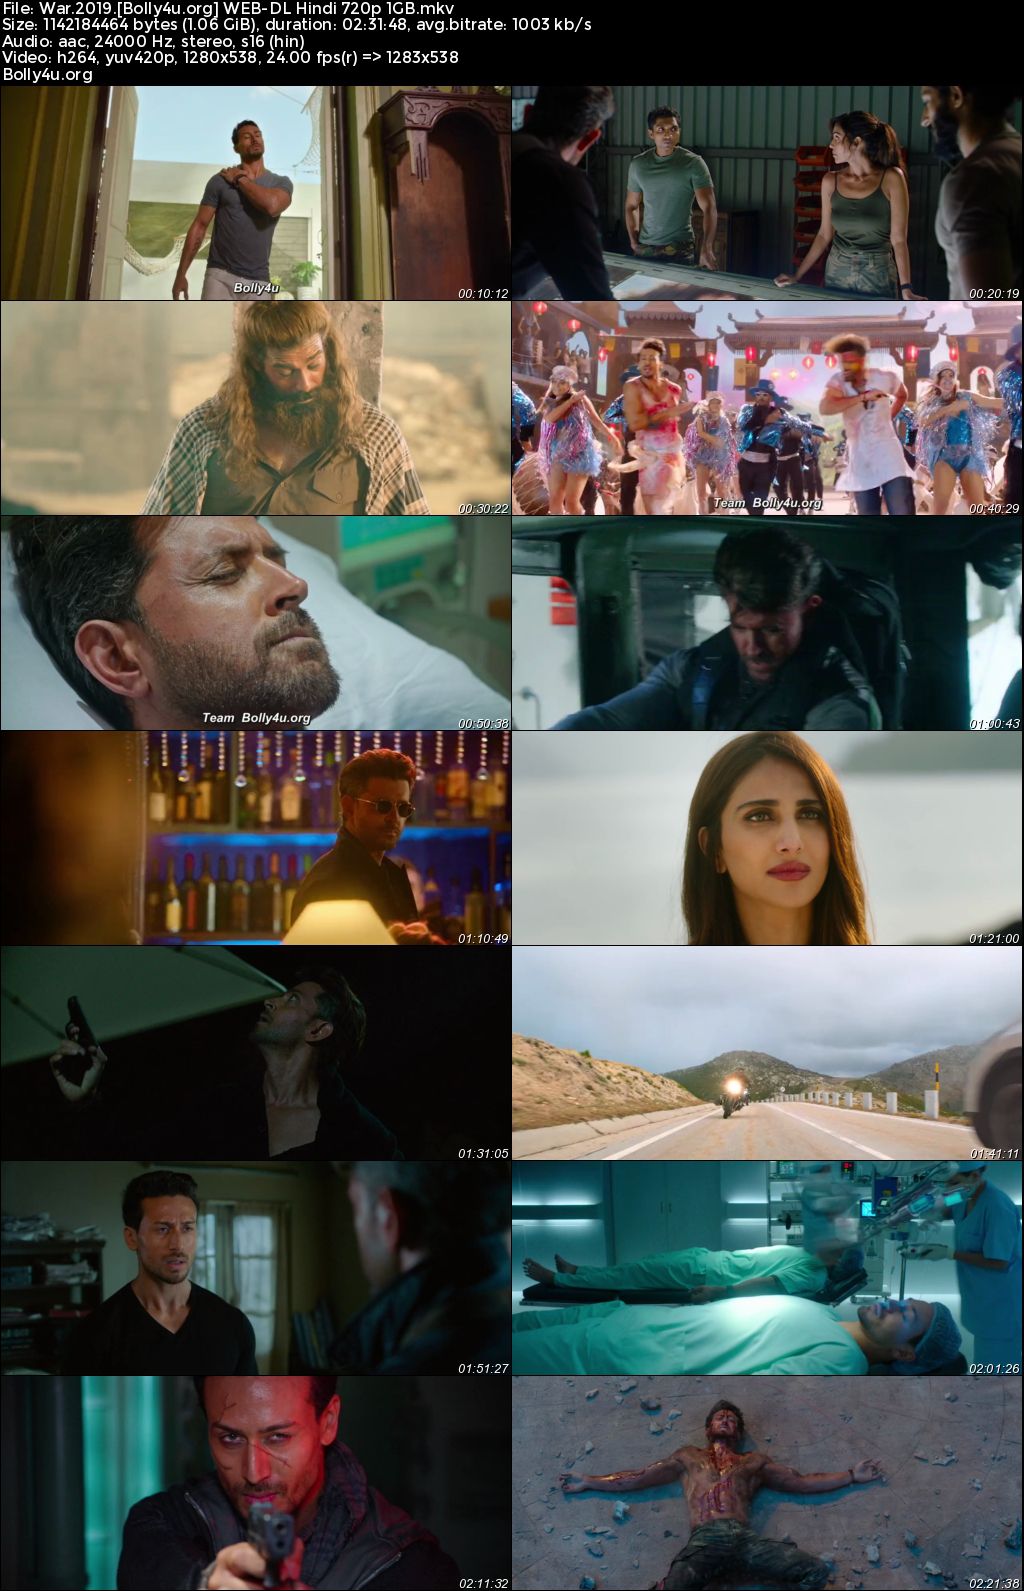 War 2019 BluRay Hindi Full Movie Download 1080p 720p 480p